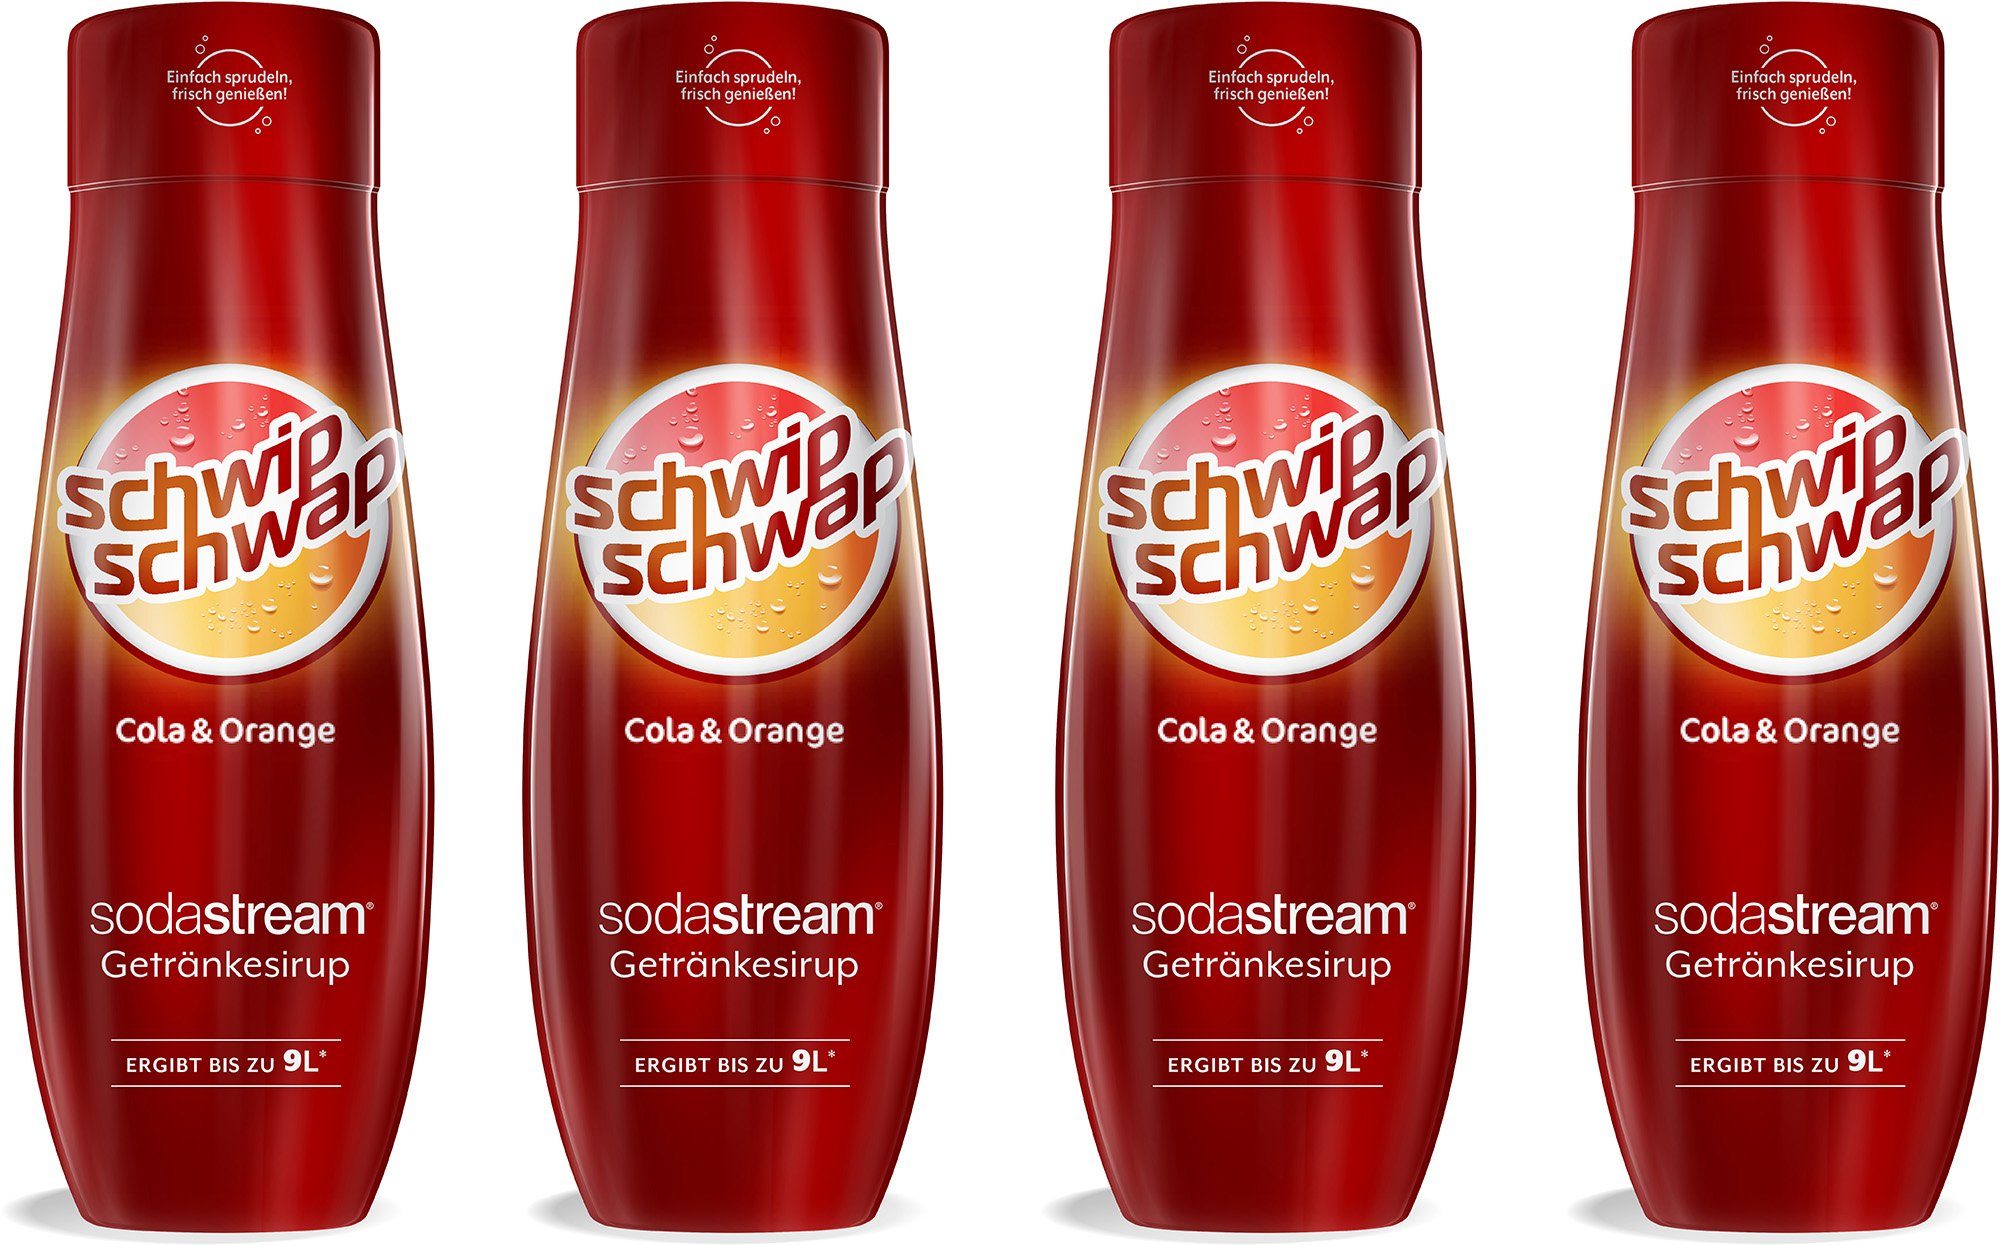 SodaStream Getränke-Sirup SchwipSchwap (Cola & Orange), 4 Stück, für bis zu  9 Liter Fertiggetränk